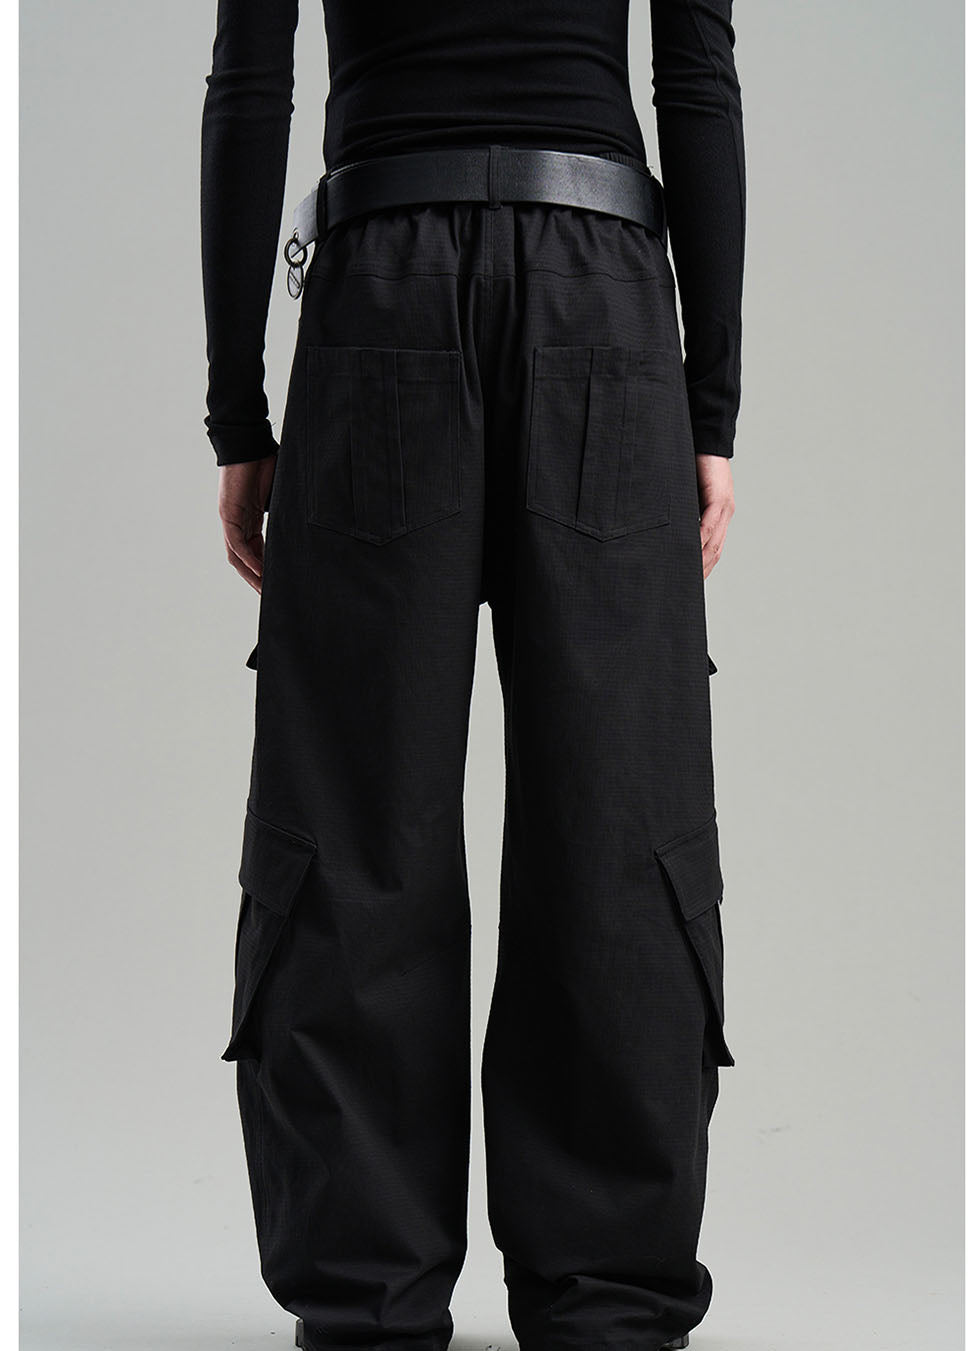 Heavy-duty multi-pocket workwear pants